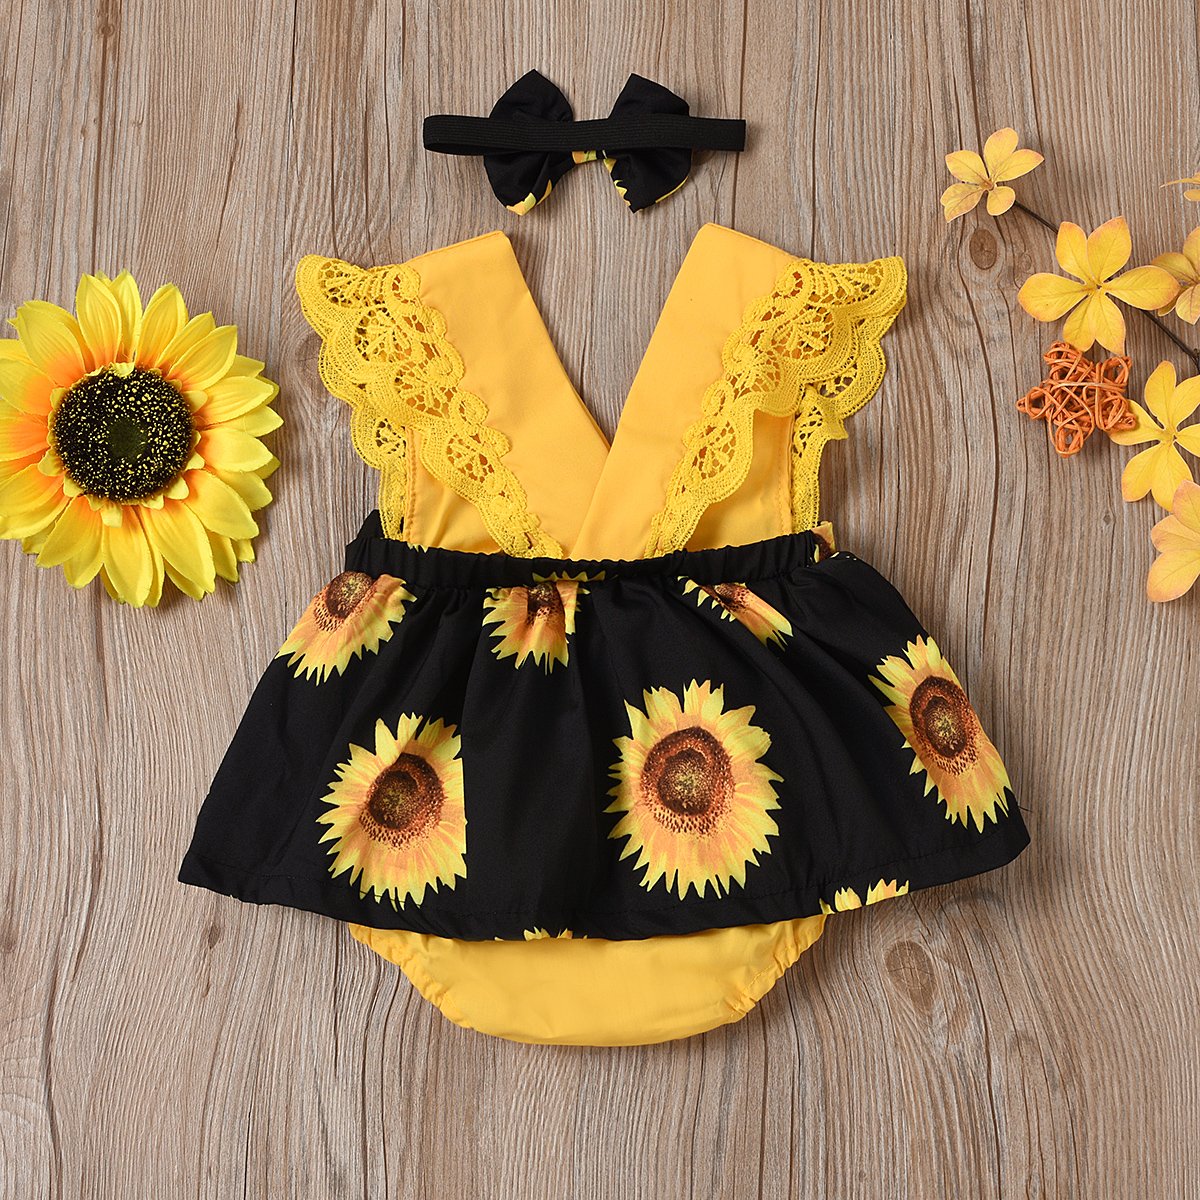 2PCS Lovely Sunflower Printed Sleeveless Baby Girl Yellow Romper